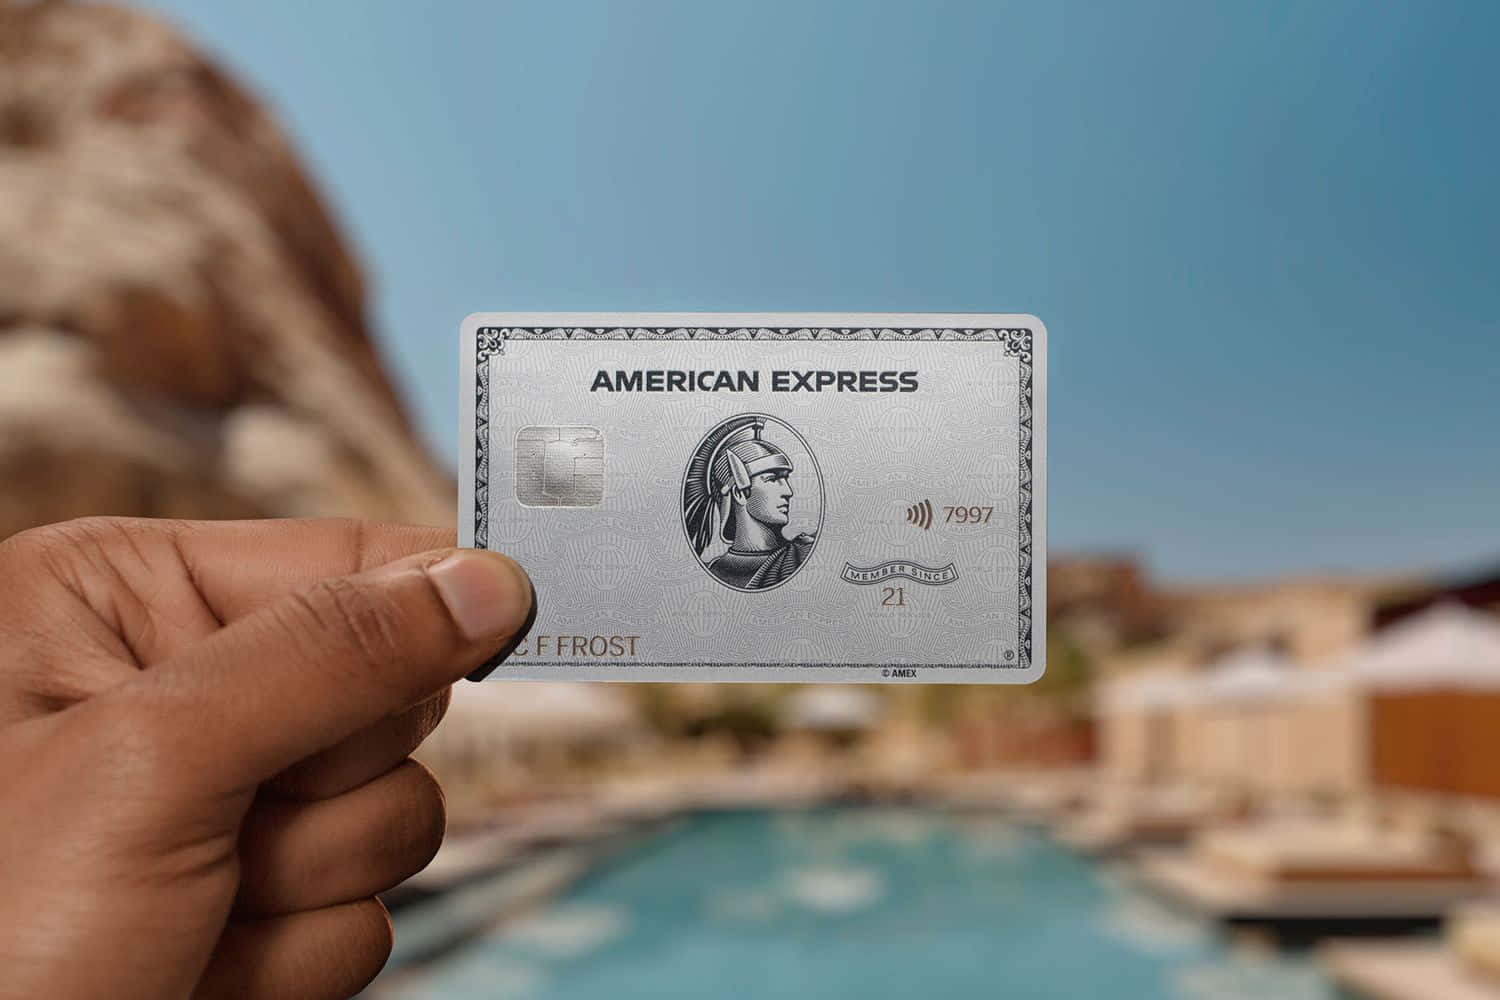 Erhalteerstaunliche Belohnungen Mit American Express